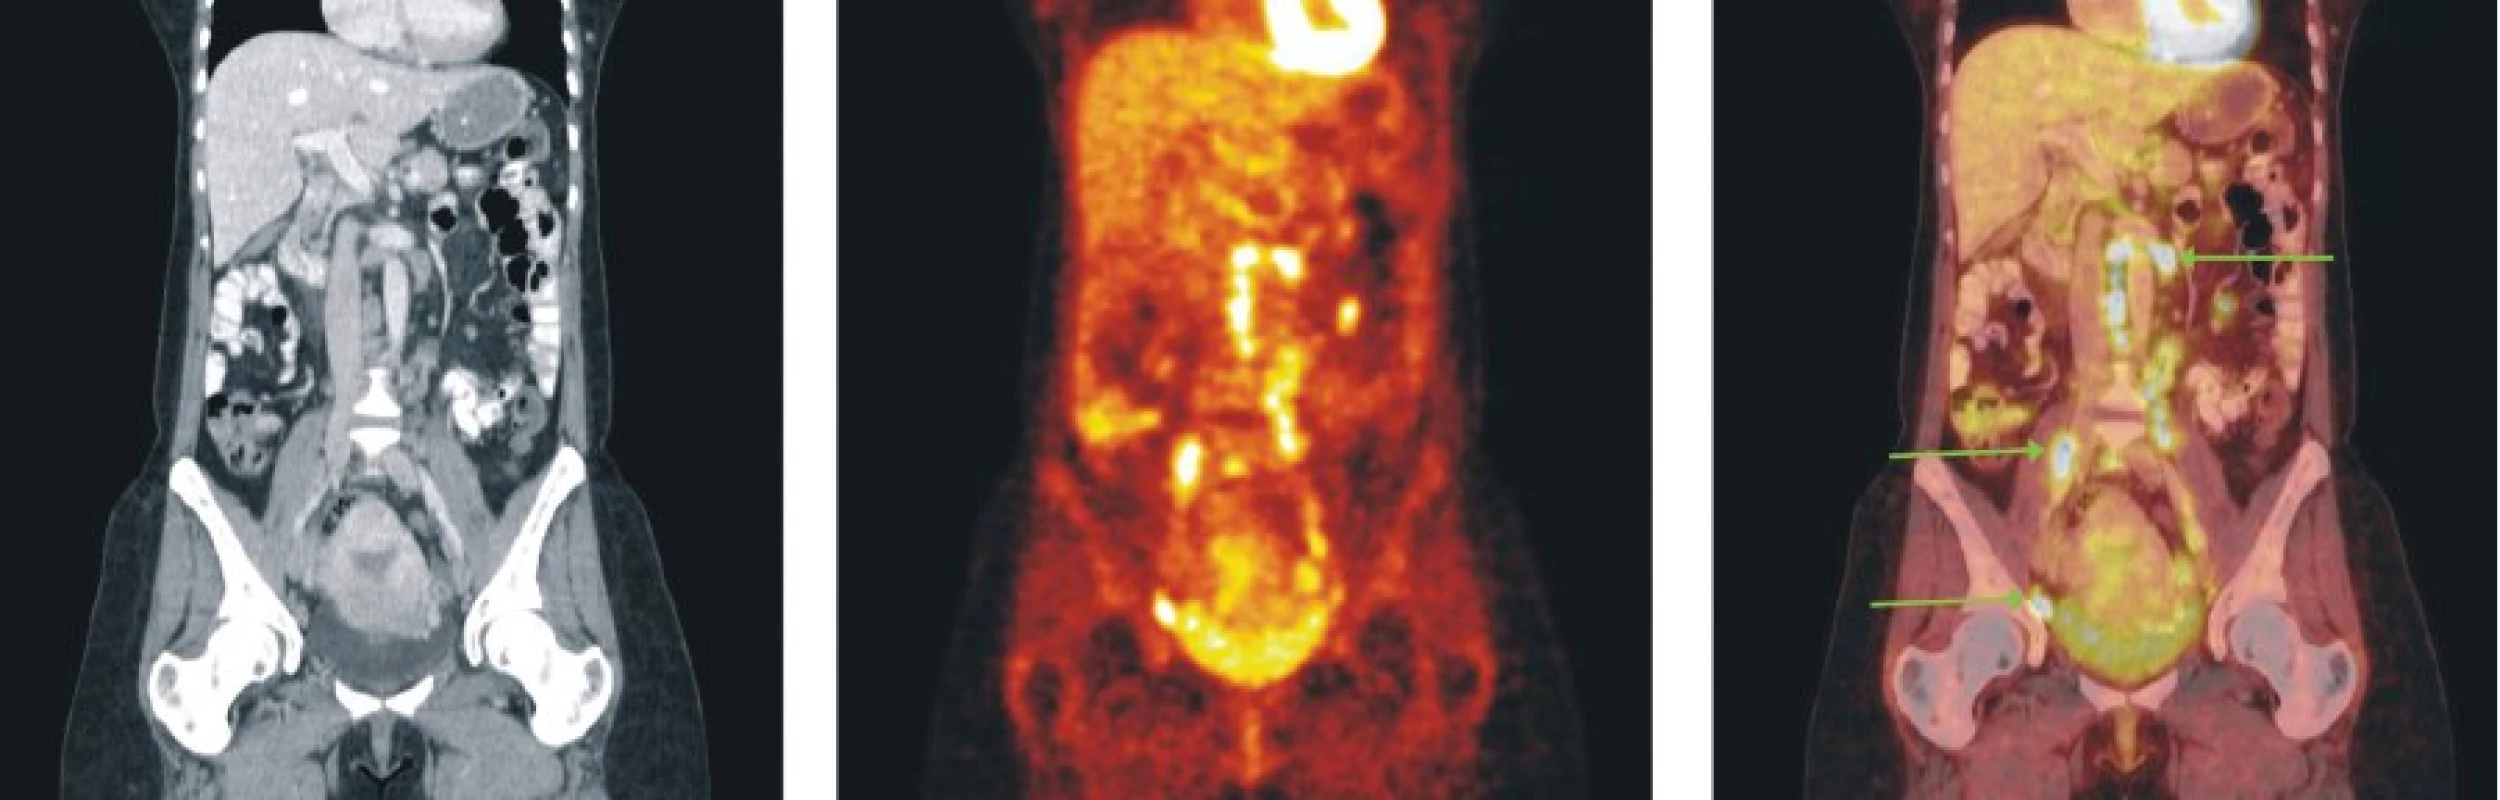 Snímky výpočetní tomografie (CT), pozitronové emisní tomografie (PET) a PET/CT u nemocného s folikulárním lymfomem stupně 2 a postižením lymfatických uzlin retroperitonea, mezenteria a pánve.